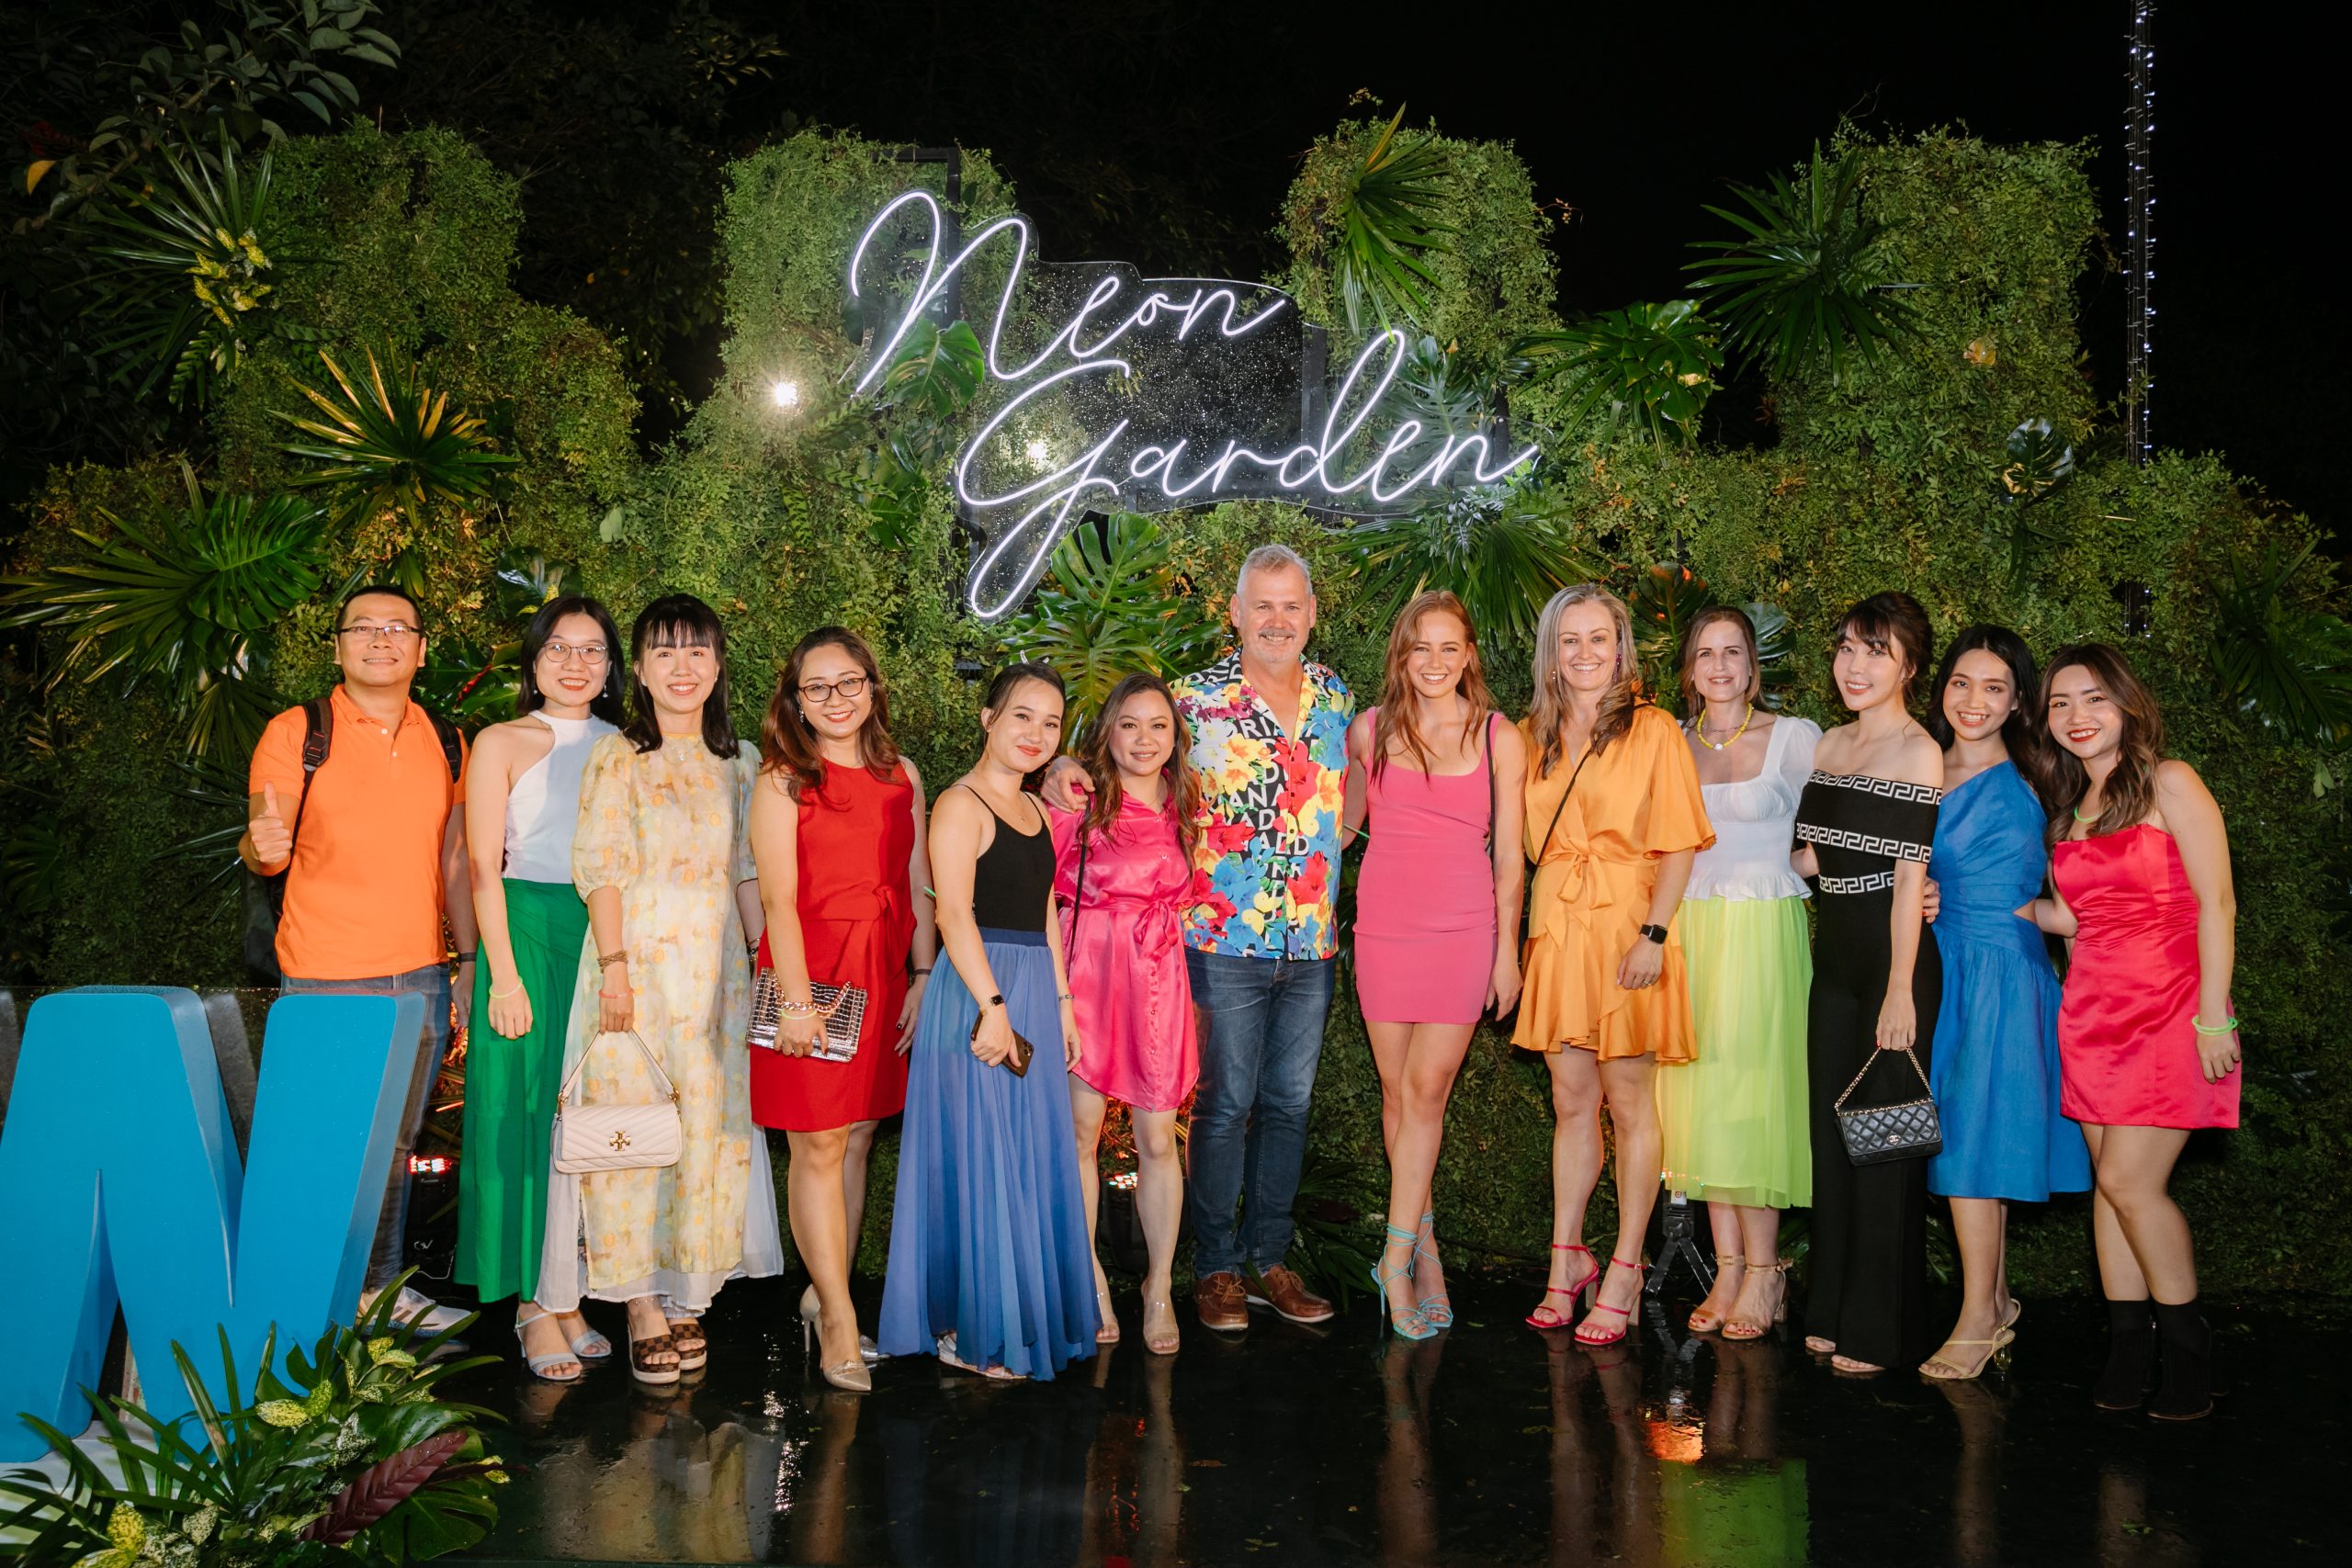 ASW Vietnam Neon Garden Party